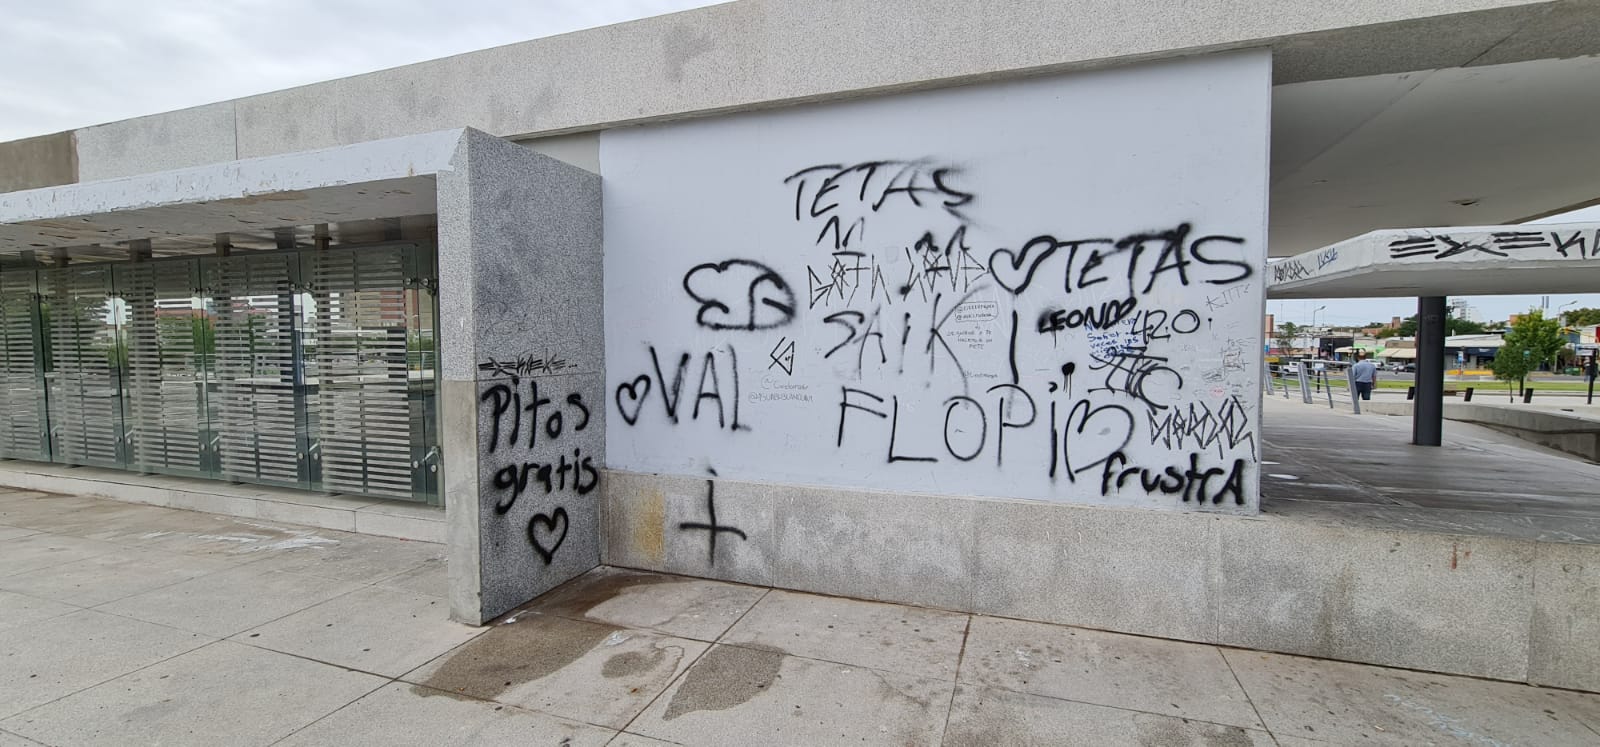 El lugar se encuentra invadido por grafitis. Foto: Gentileza